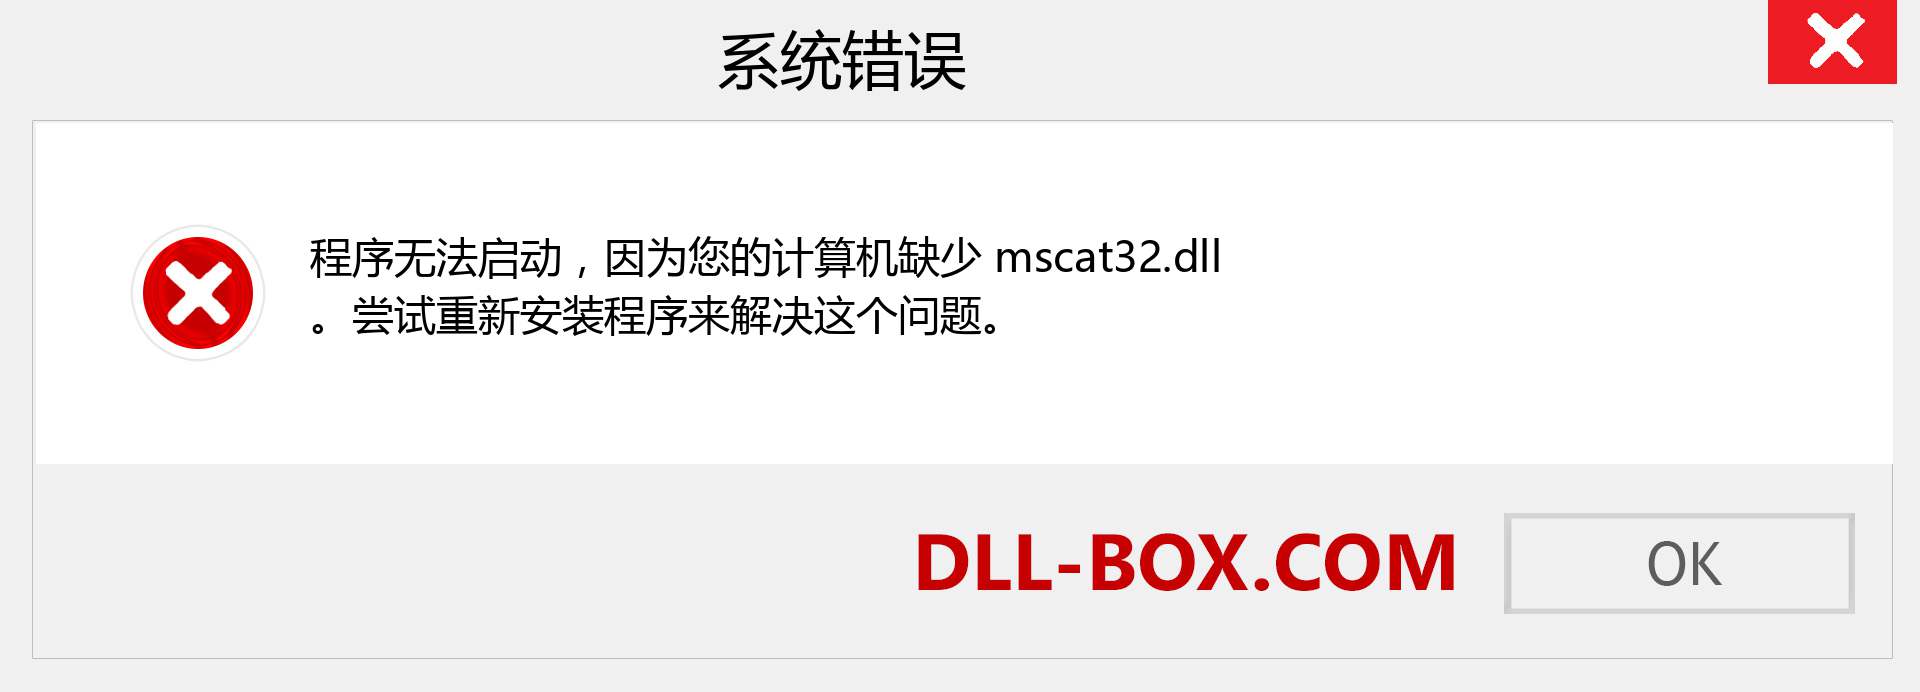 mscat32.dll 文件丢失？。 适用于 Windows 7、8、10 的下载 - 修复 Windows、照片、图像上的 mscat32 dll 丢失错误